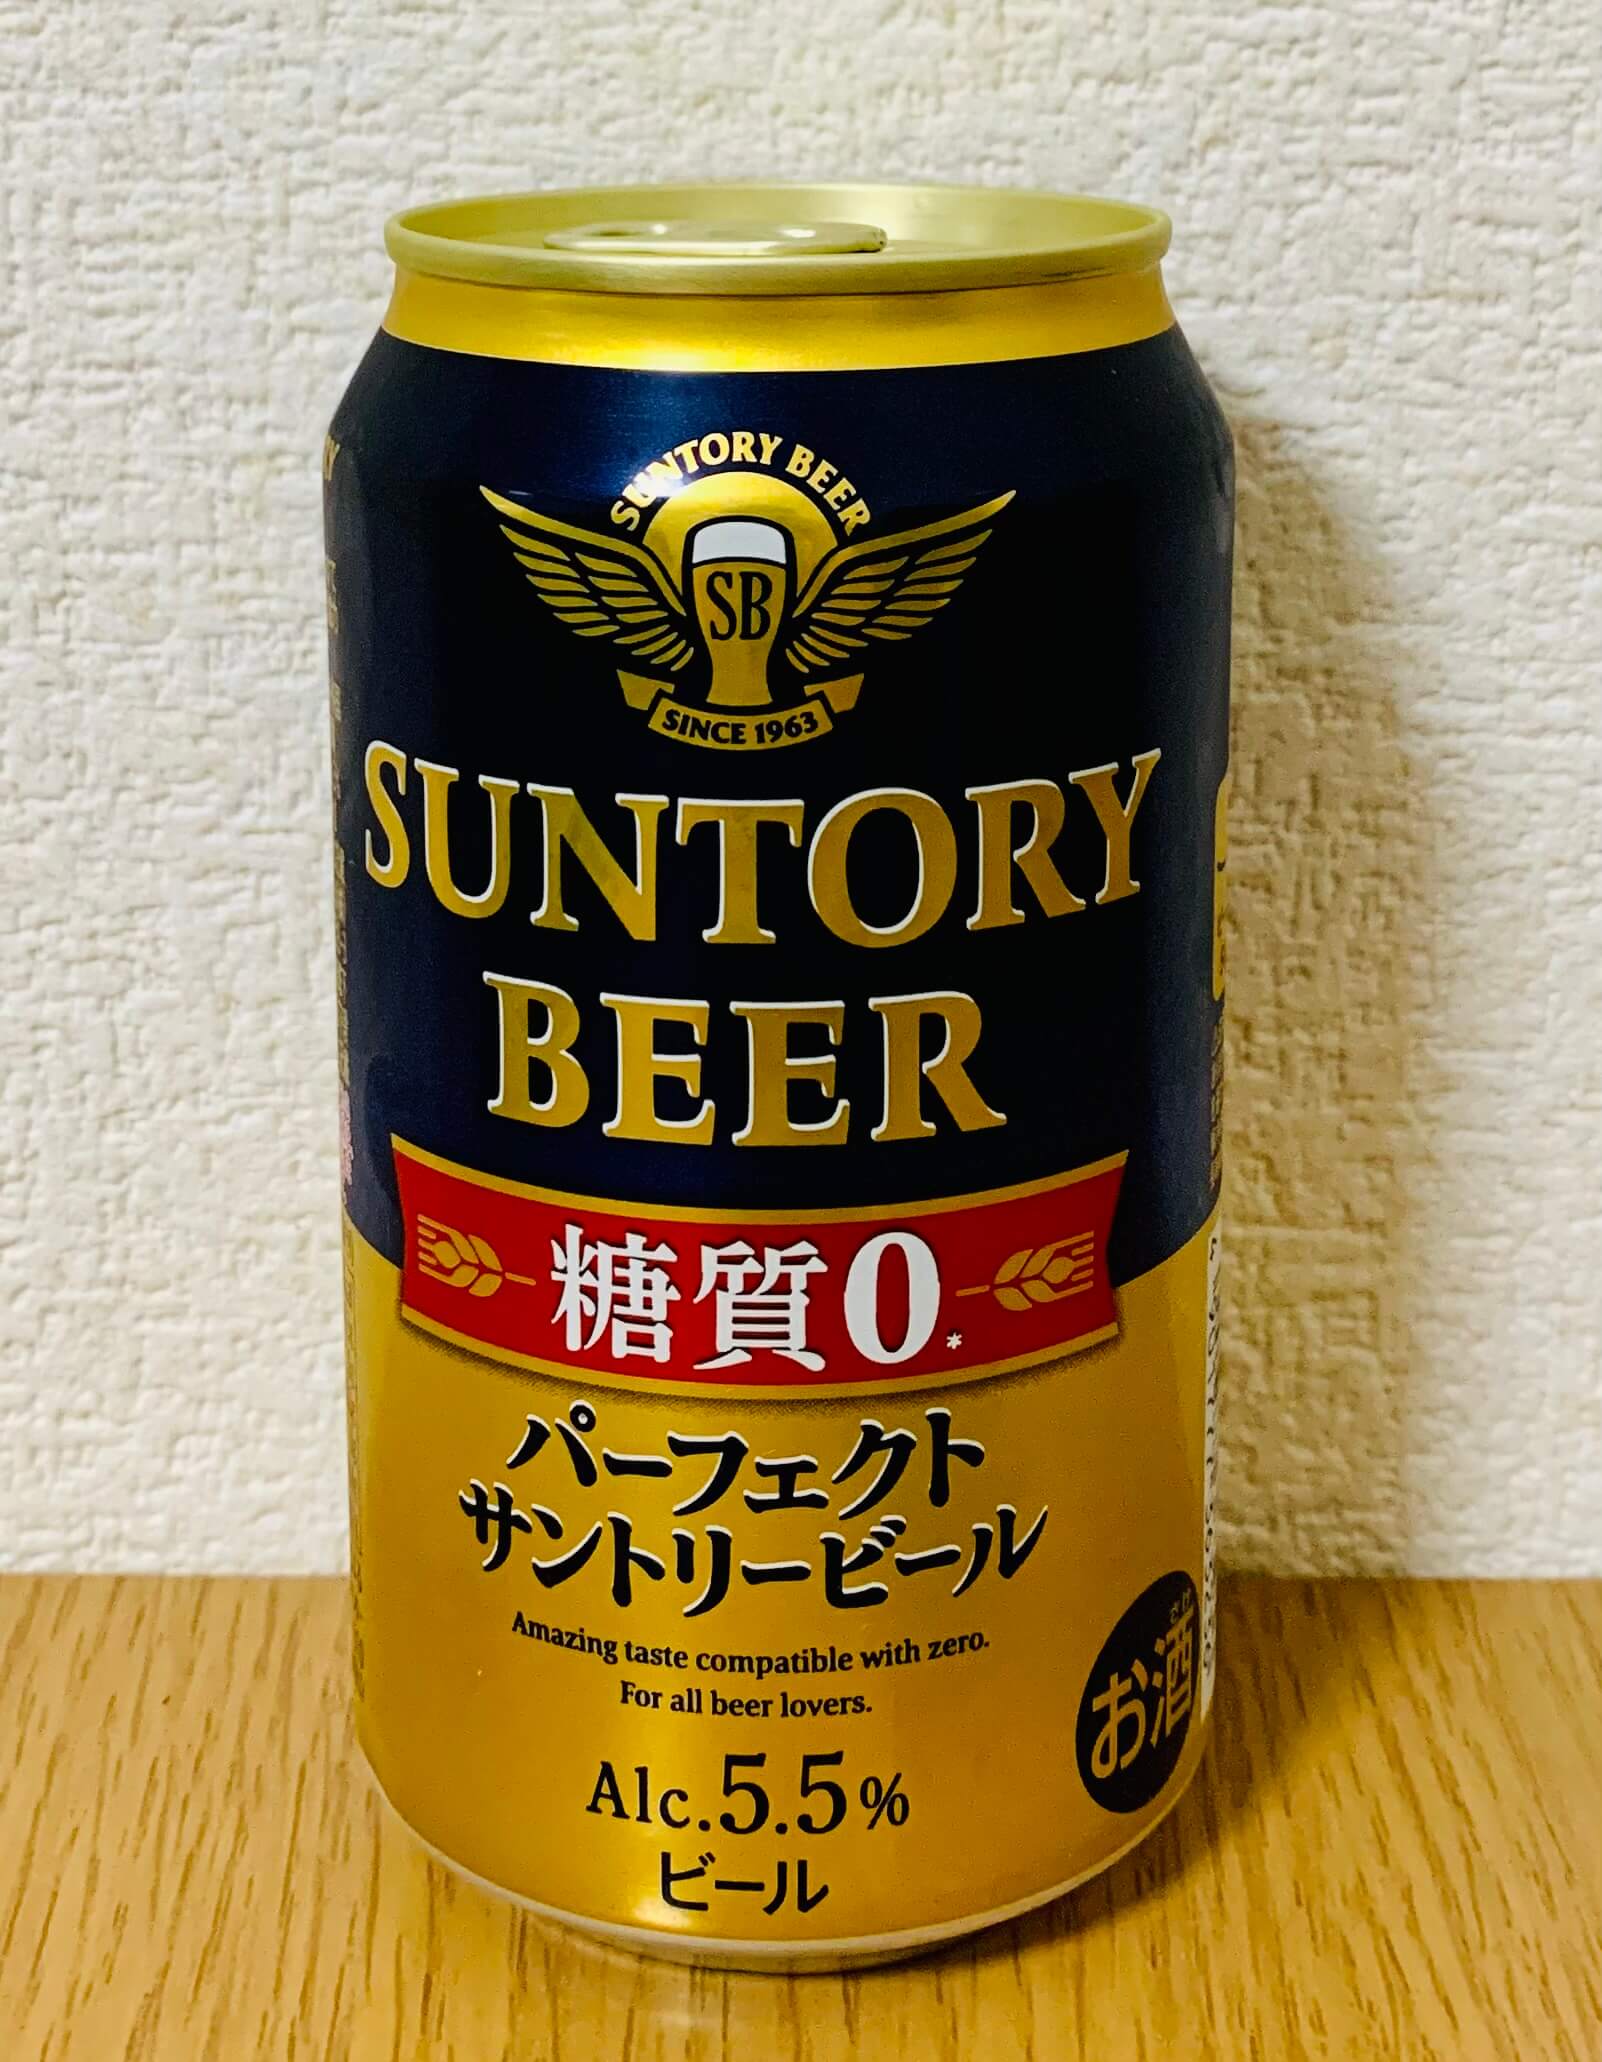 パーフェクトサントリービール 糖質0.